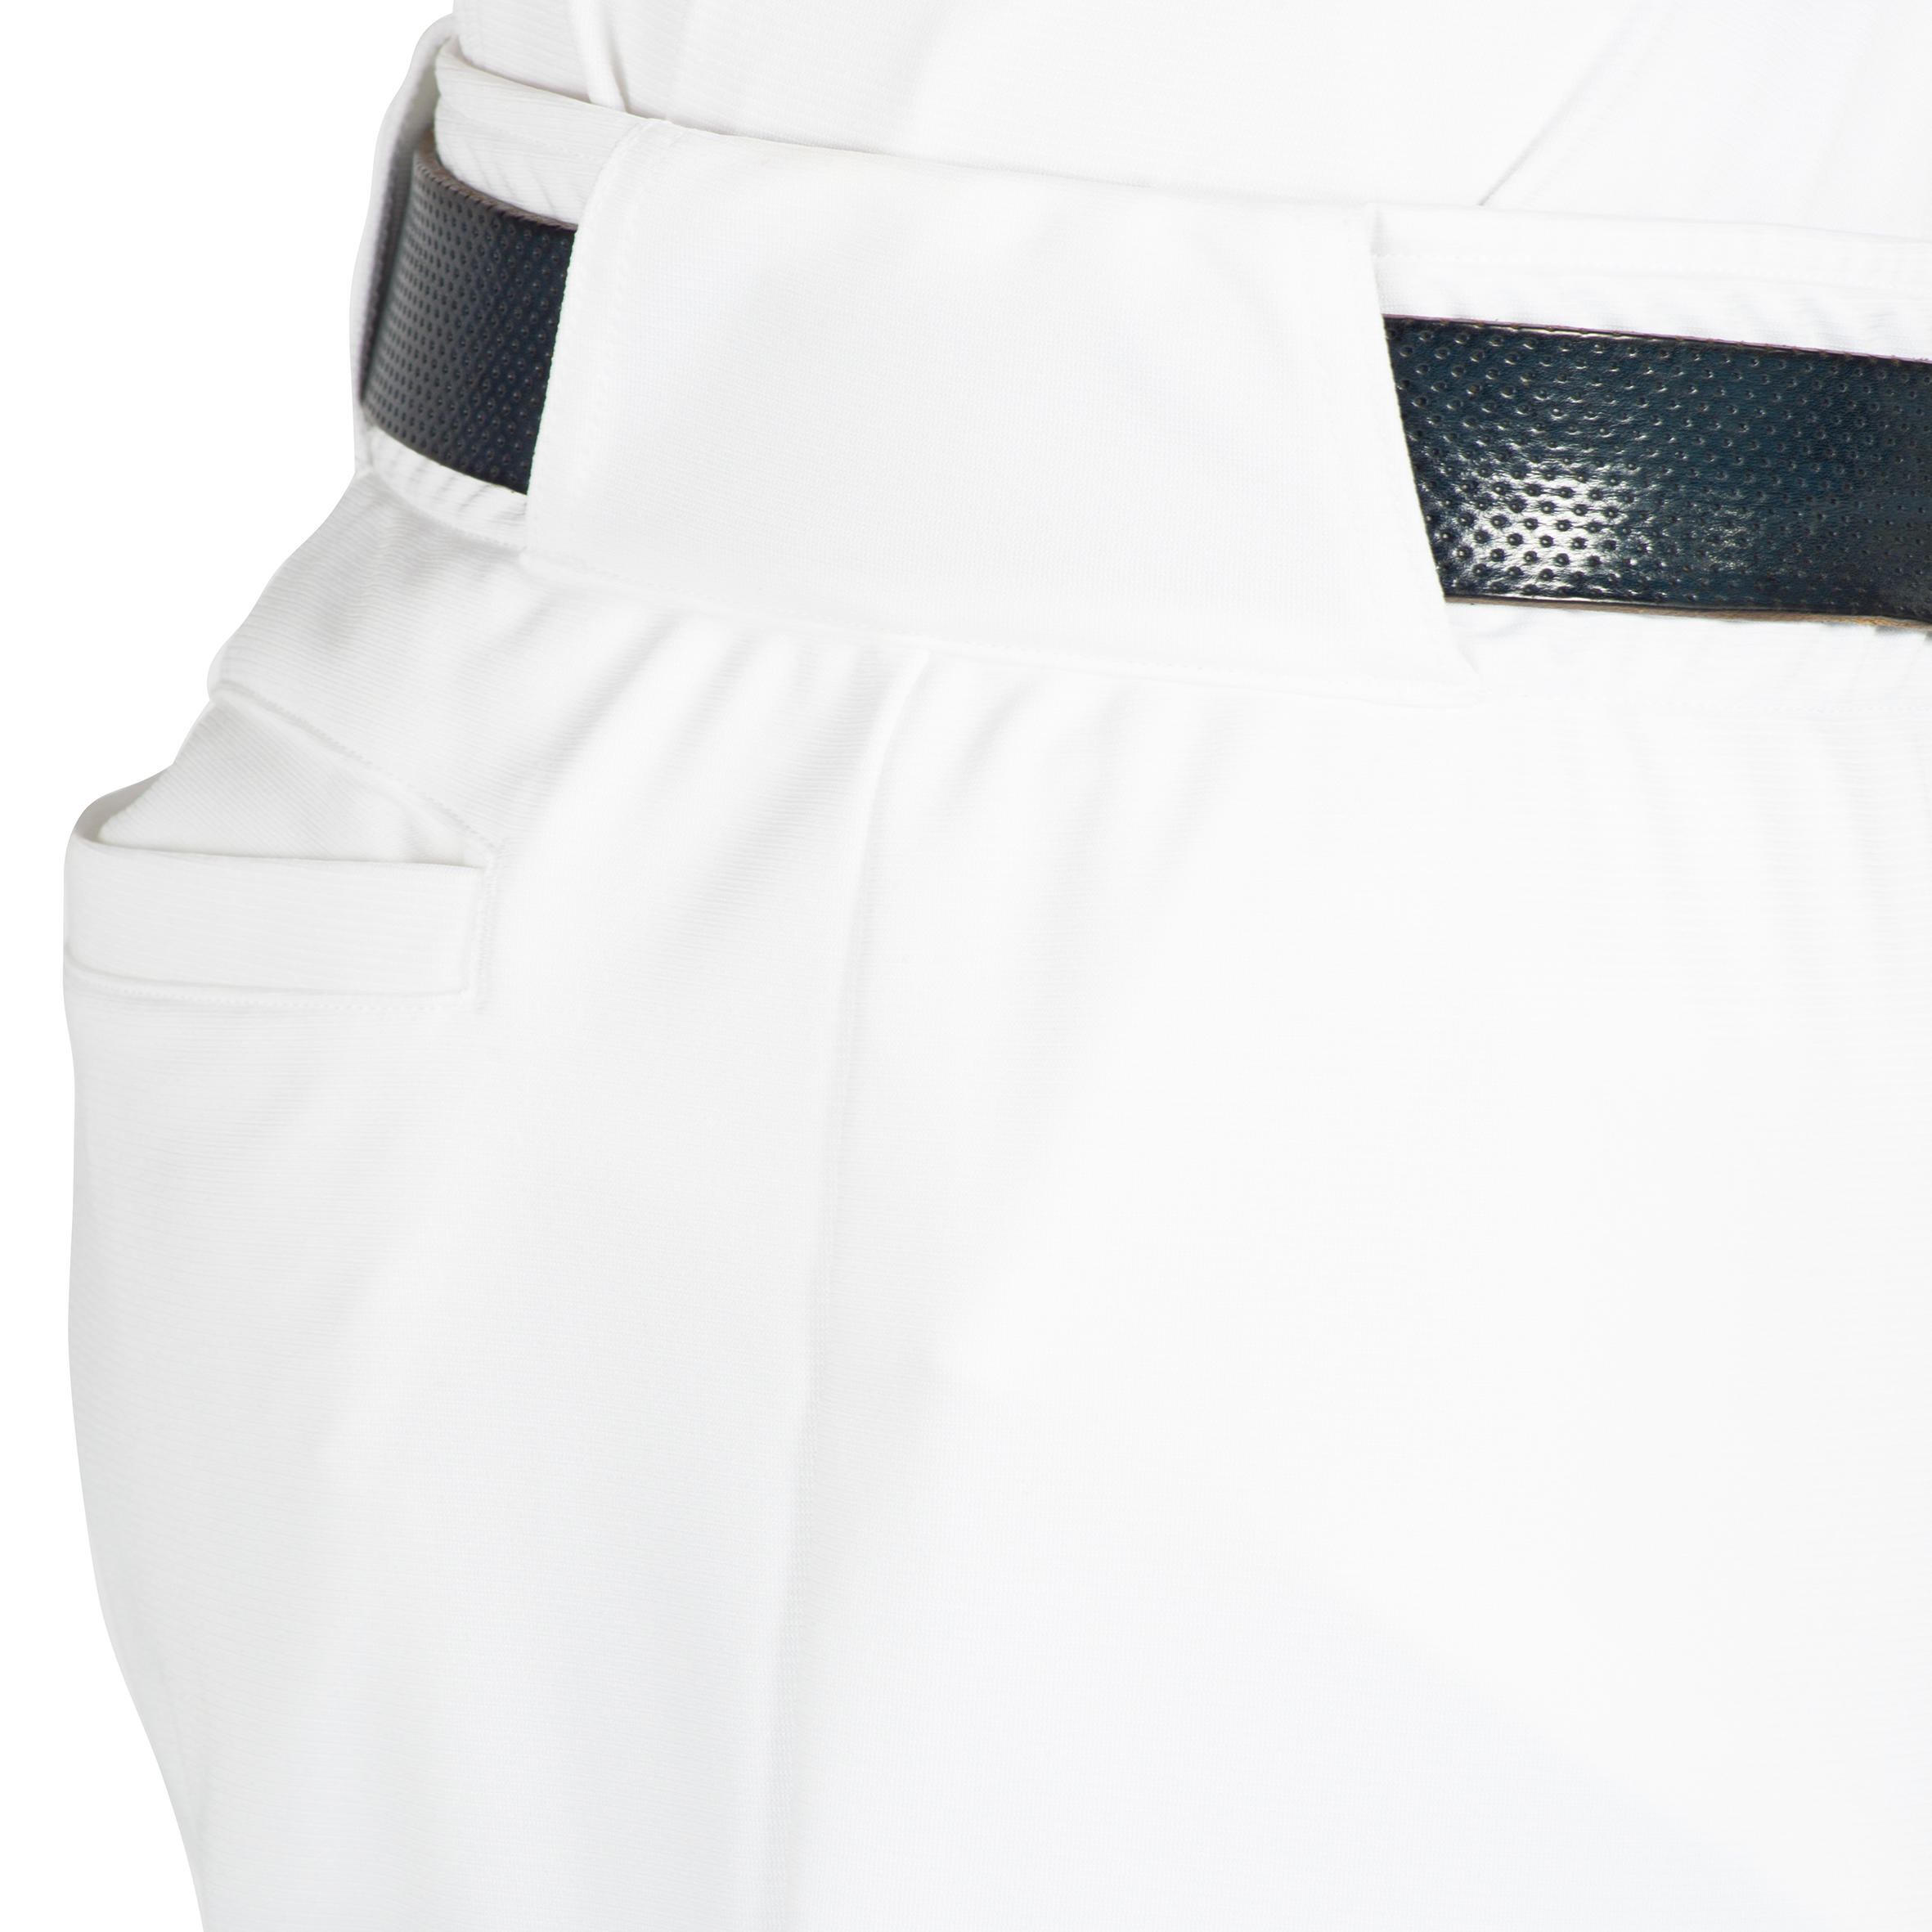 BA 550 Adult Baseball Pants - White 5/11